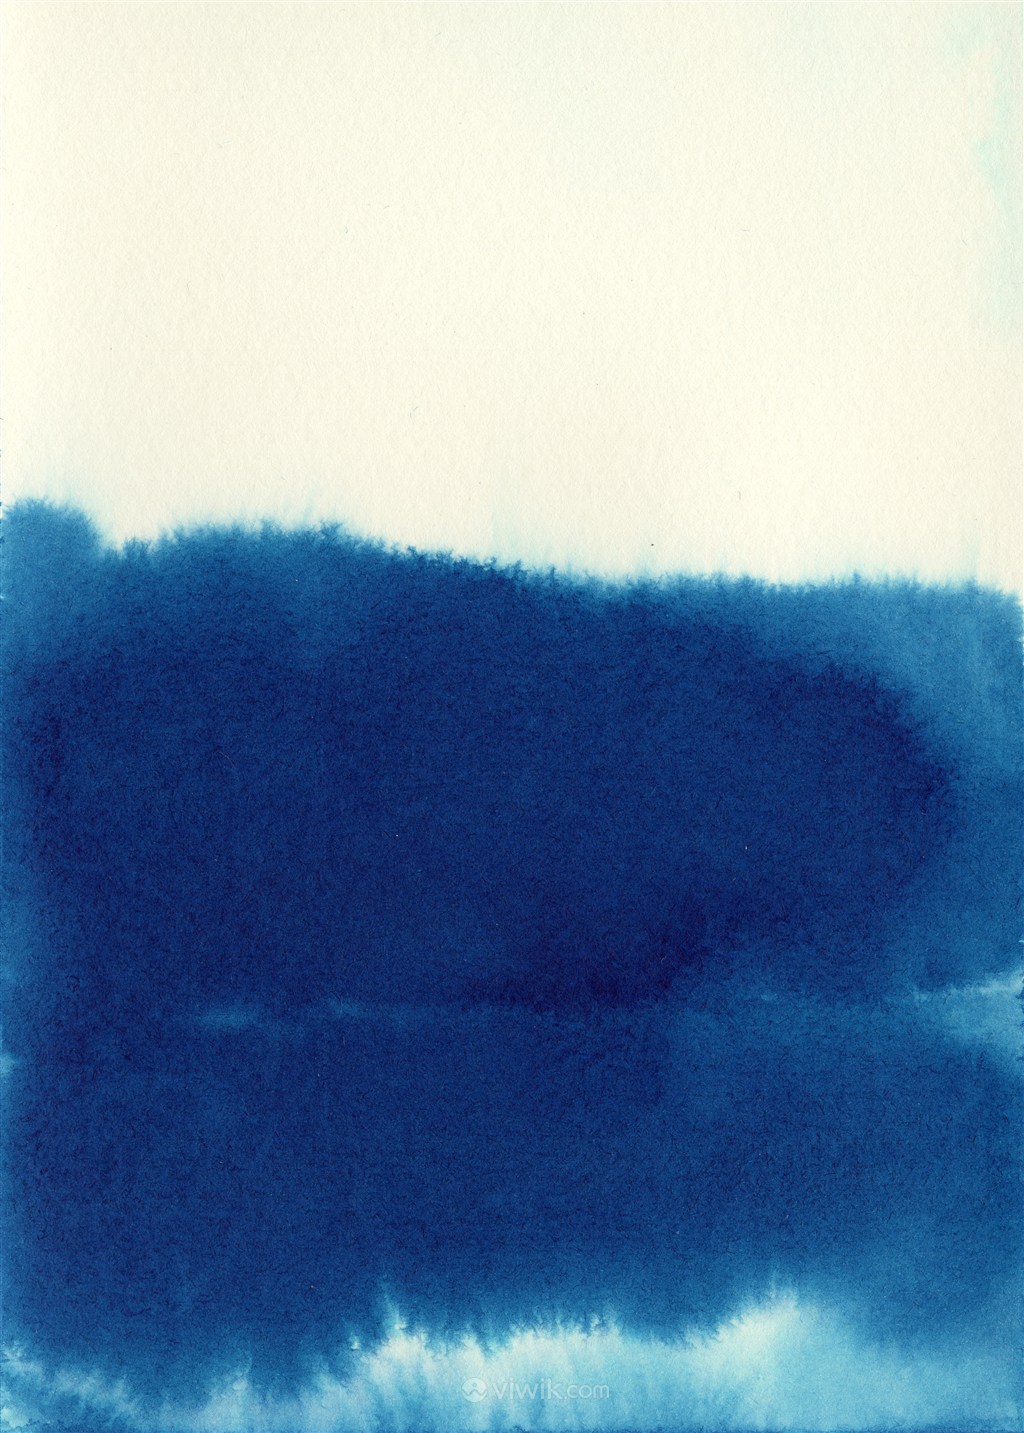 抽象水墨蓝色纯色水彩墨迹背景素材